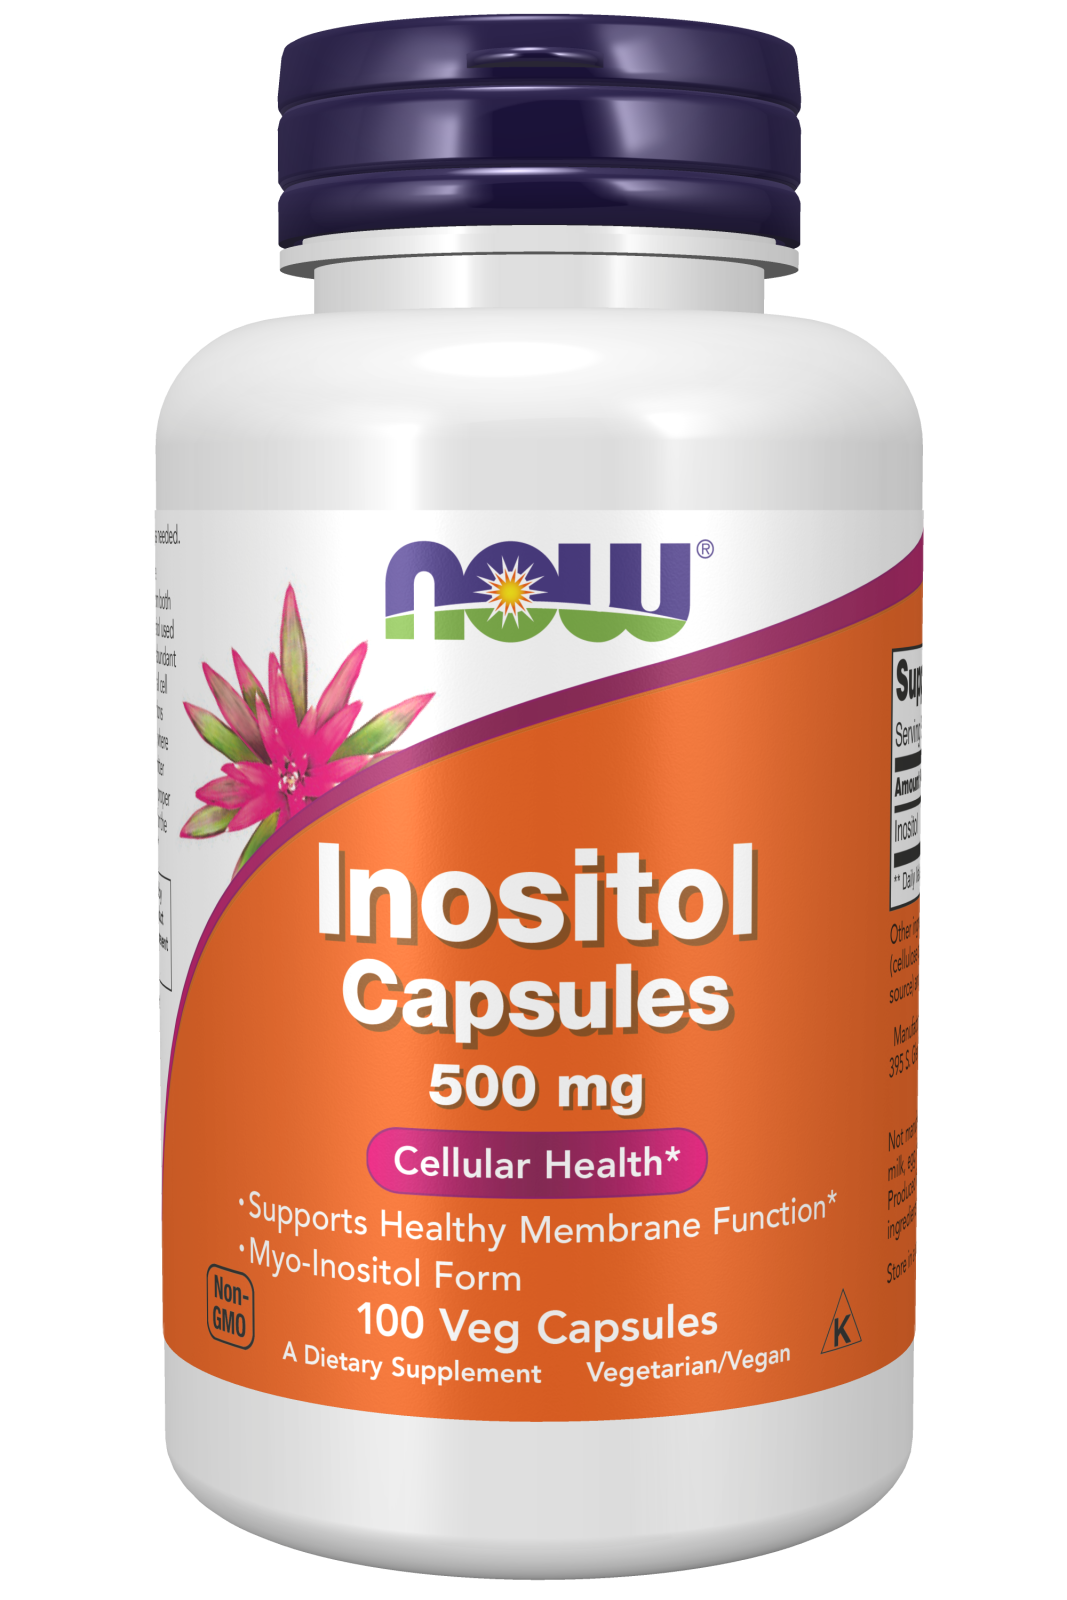 Inositol Capsules 500 mg Veg Capsules